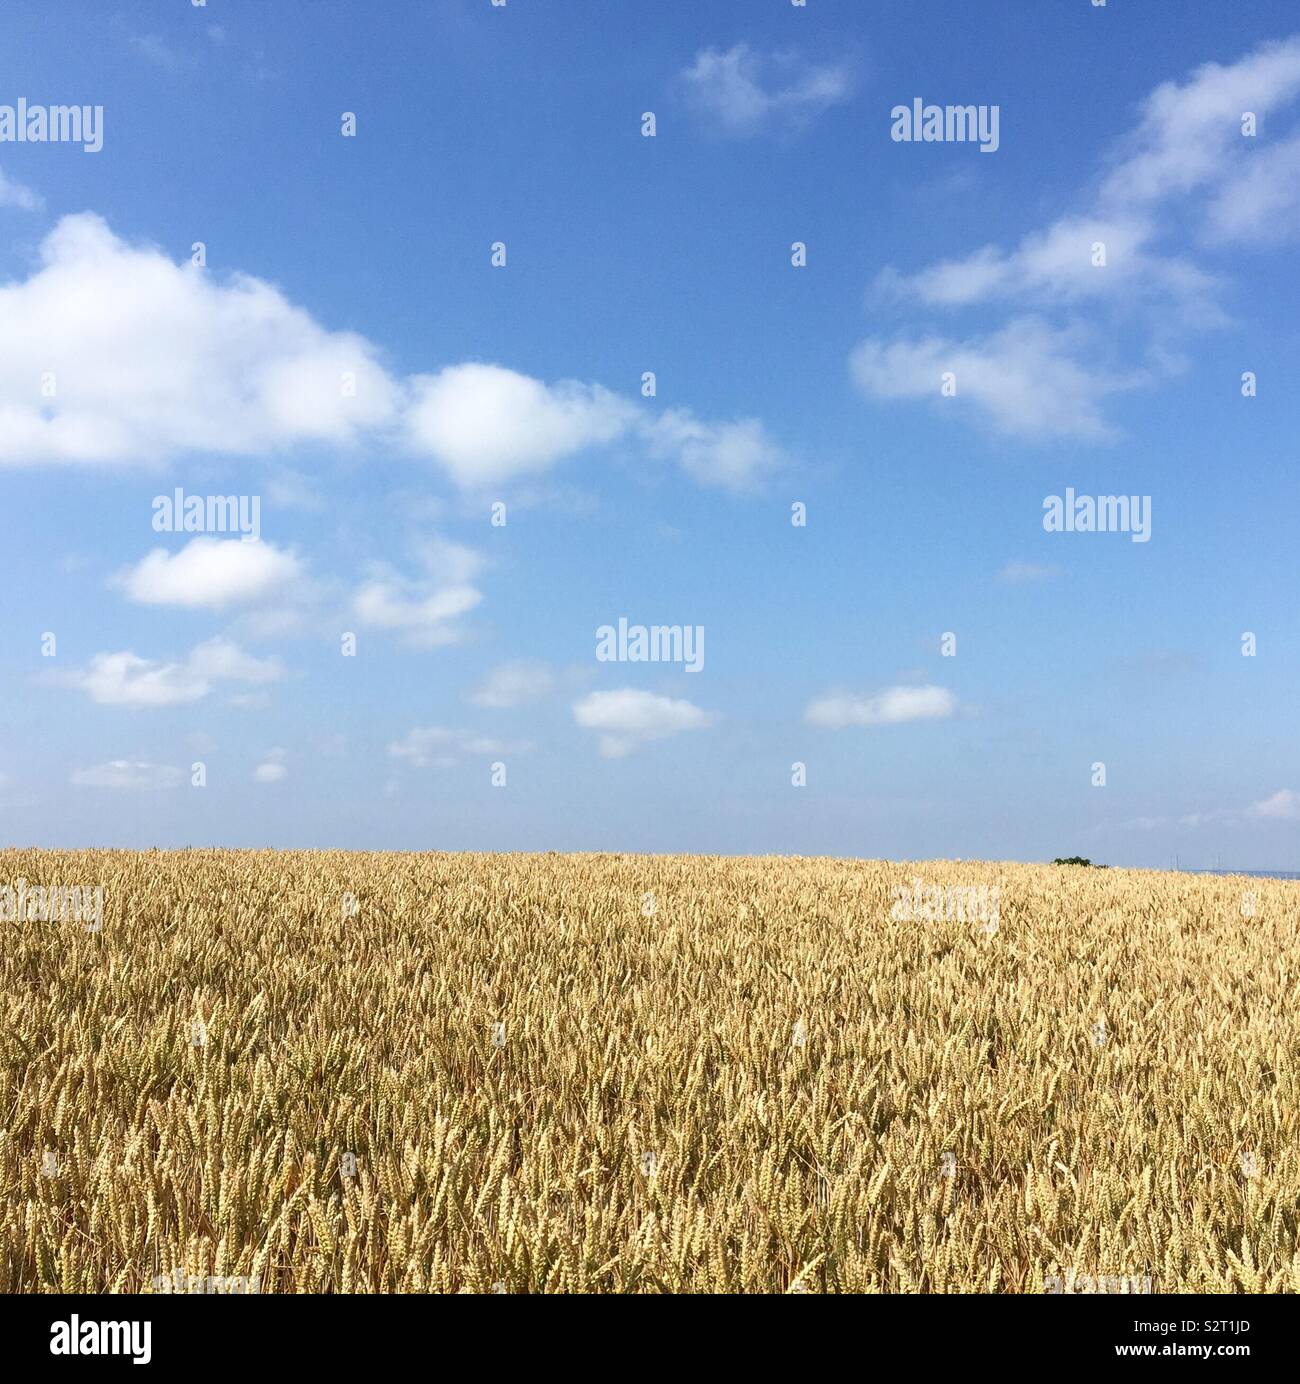 Los veranos día de caminata a través de la cosecha de trigo Foto de stock